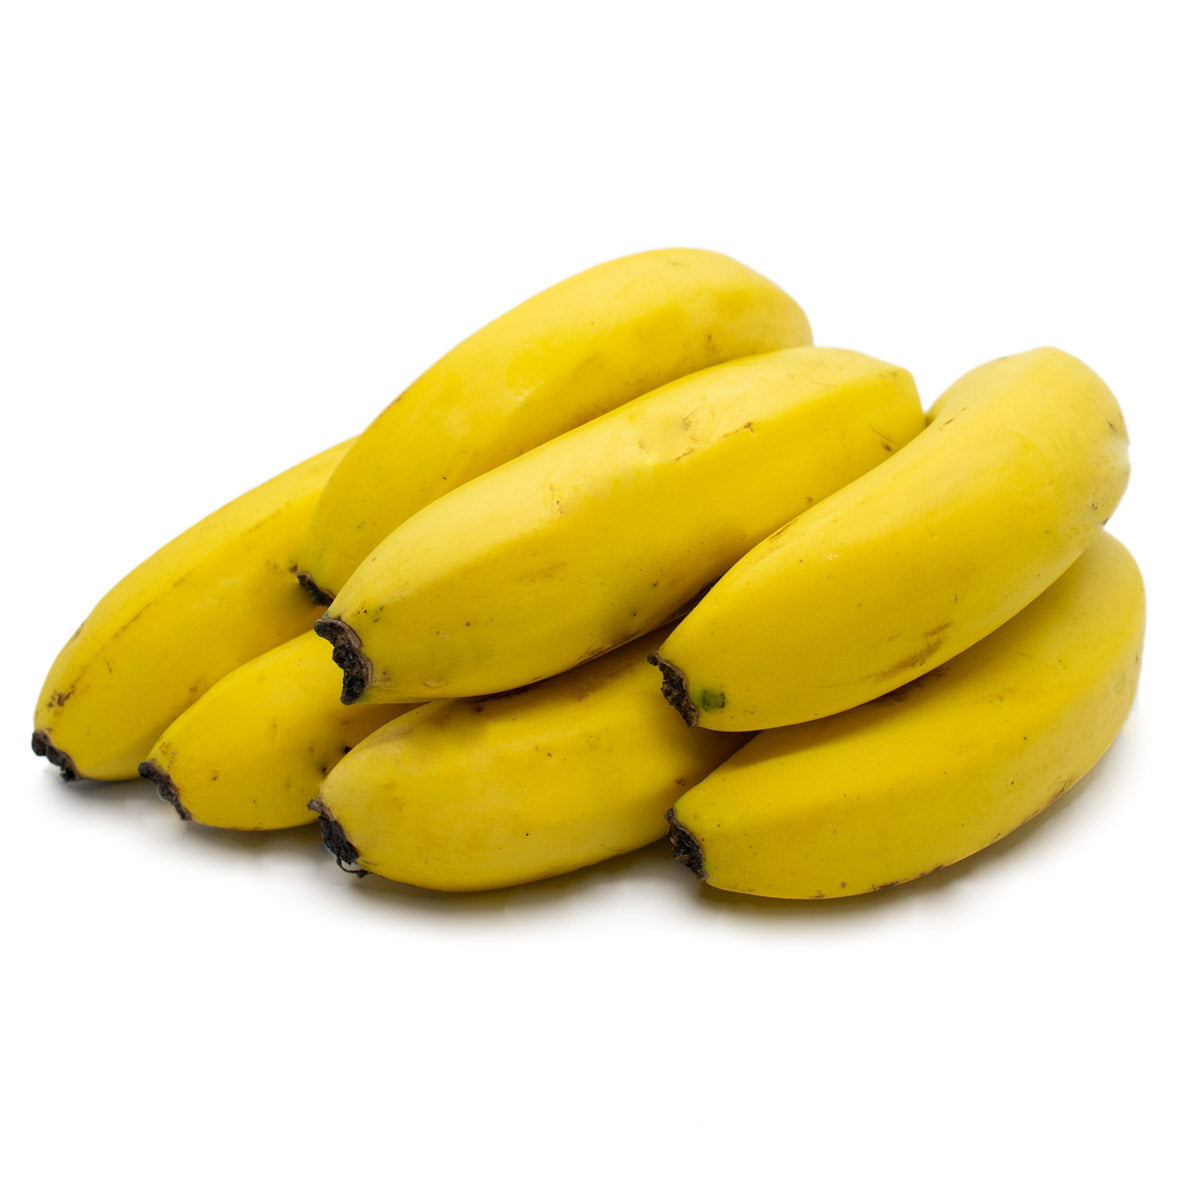 Banano Criollo